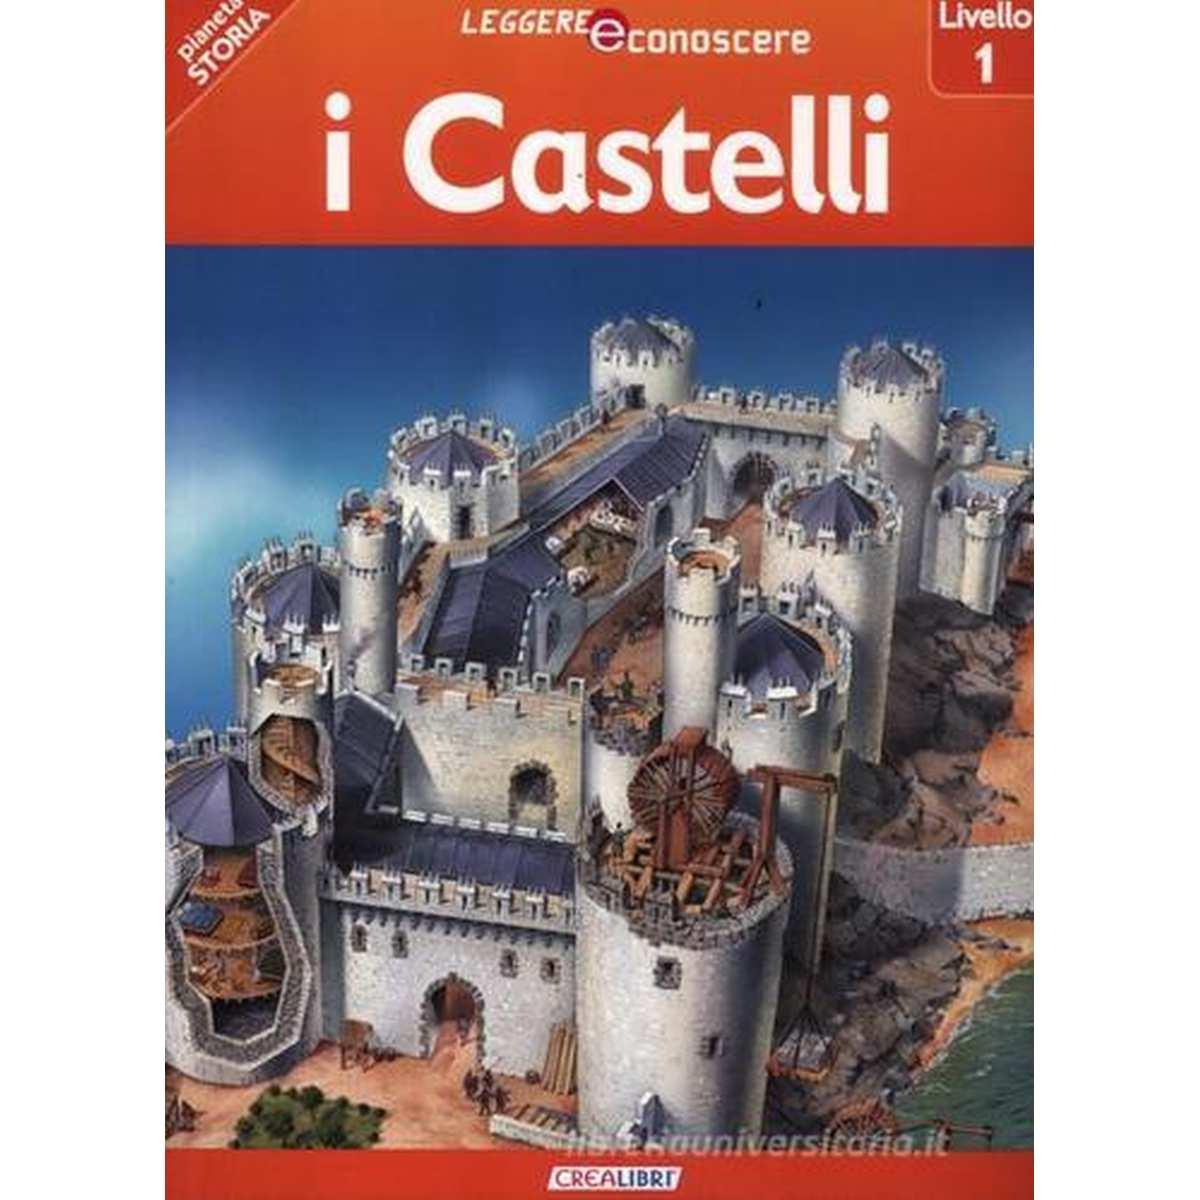 Leggere e conoscere . i castelli